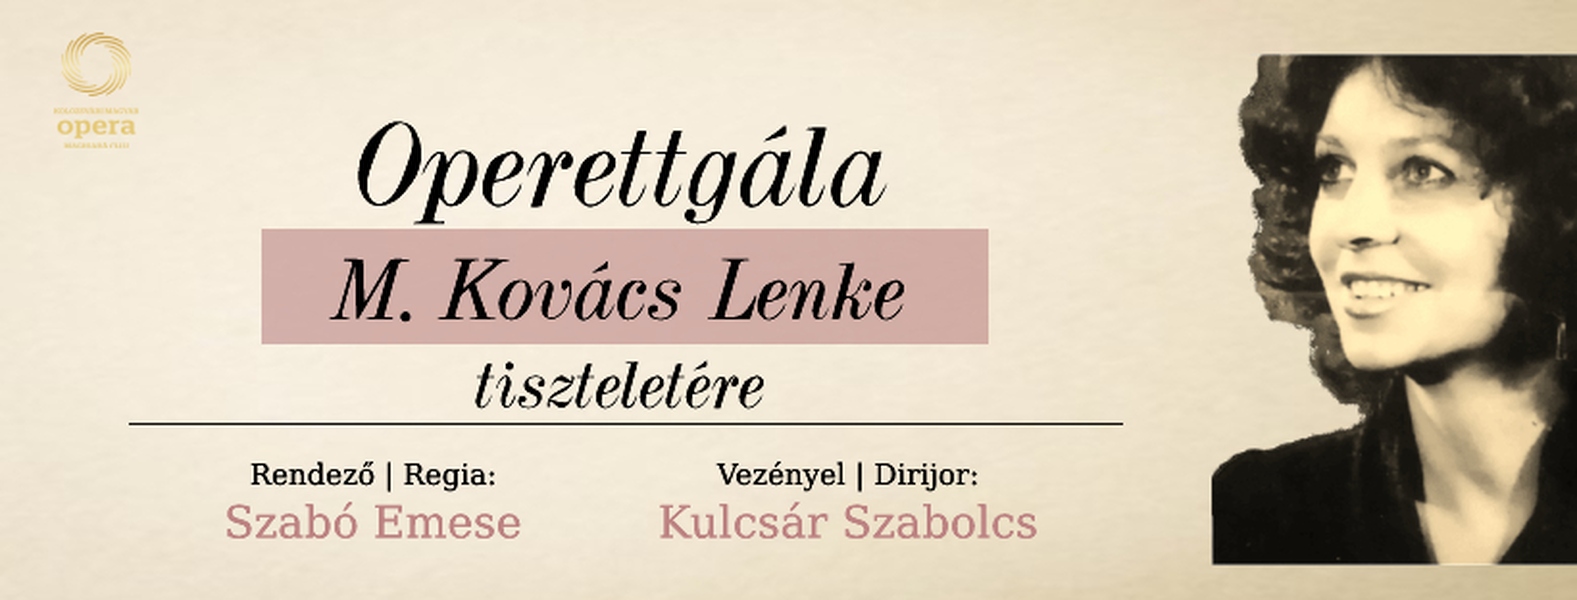 Operettgála M. Kovács Lenke tiszteletére